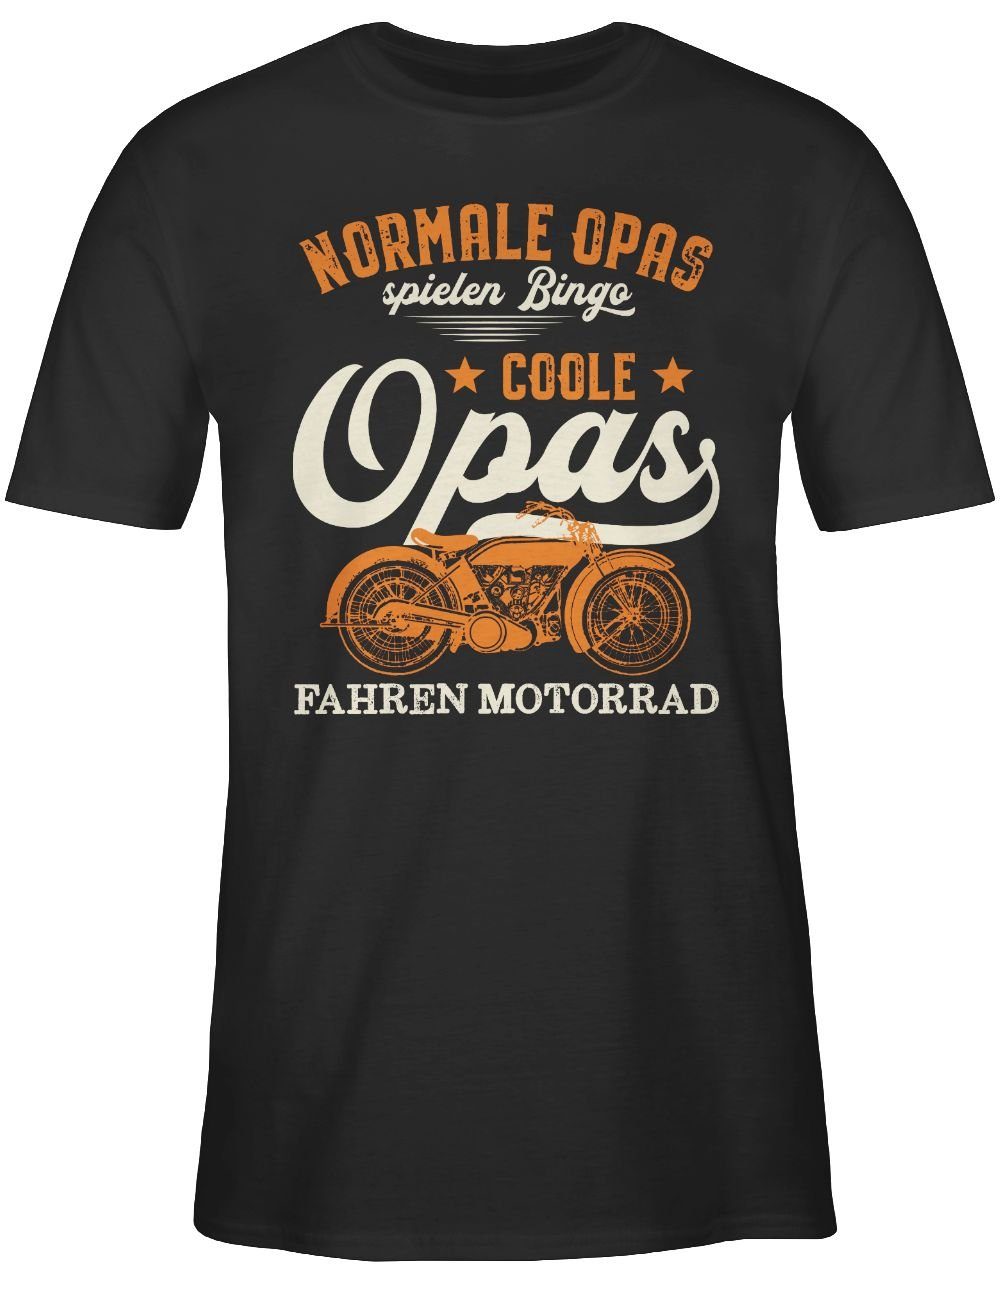 Shirtracer T-Shirt Coole - Normale fahren Opas Opa Bingo Opas - hell 01 Schwarz spielen Geschenke Motorrad